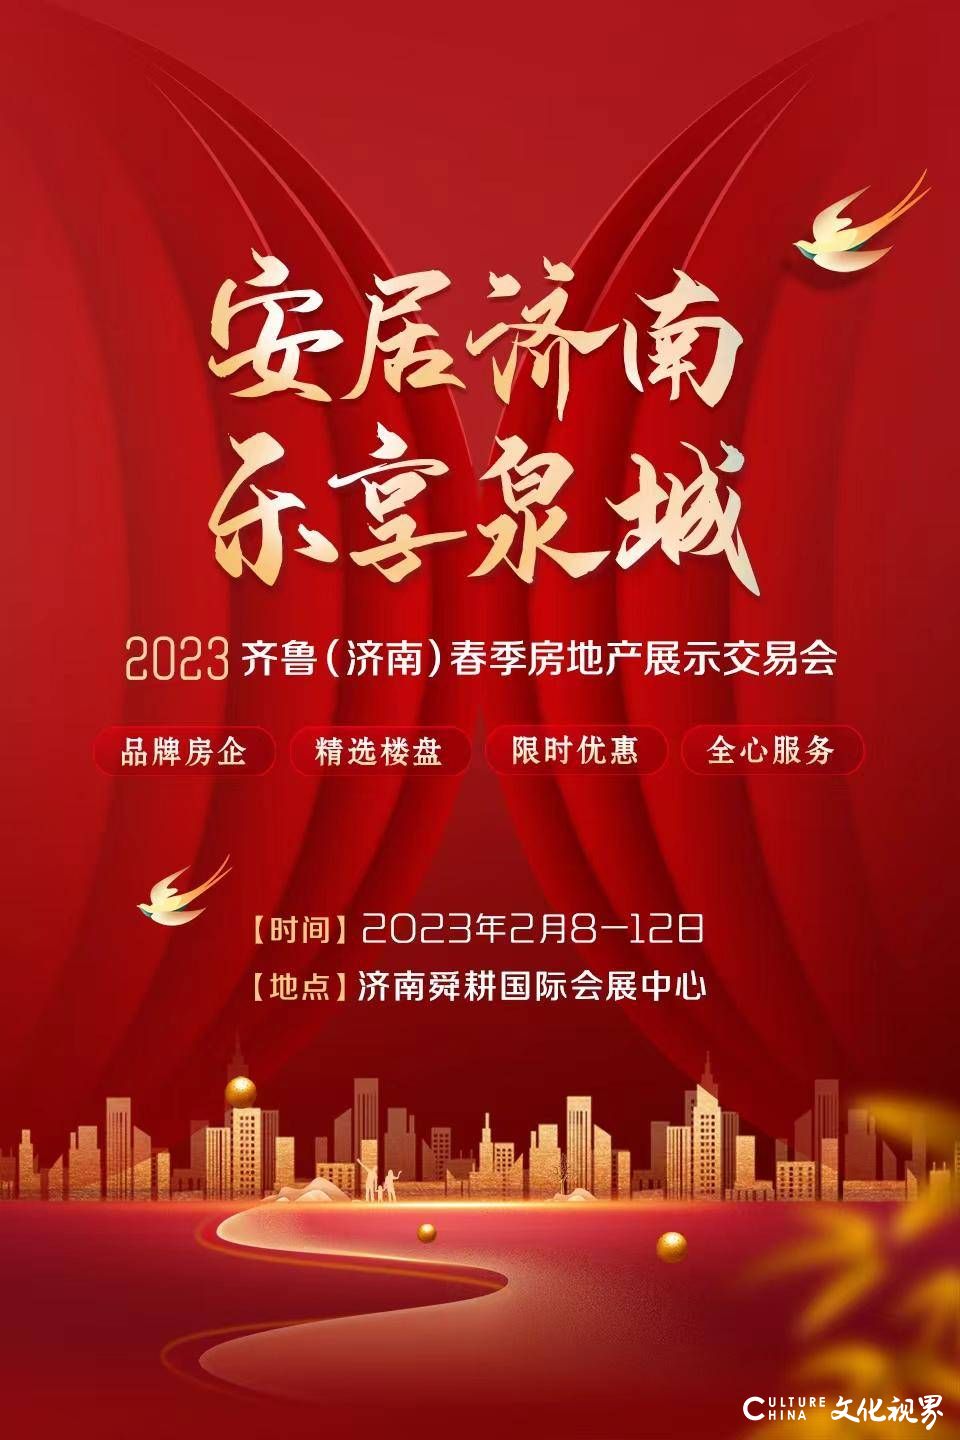 2月8—12日，2023齐鲁（济南）春季房展将在舜耕国际会展中心举办